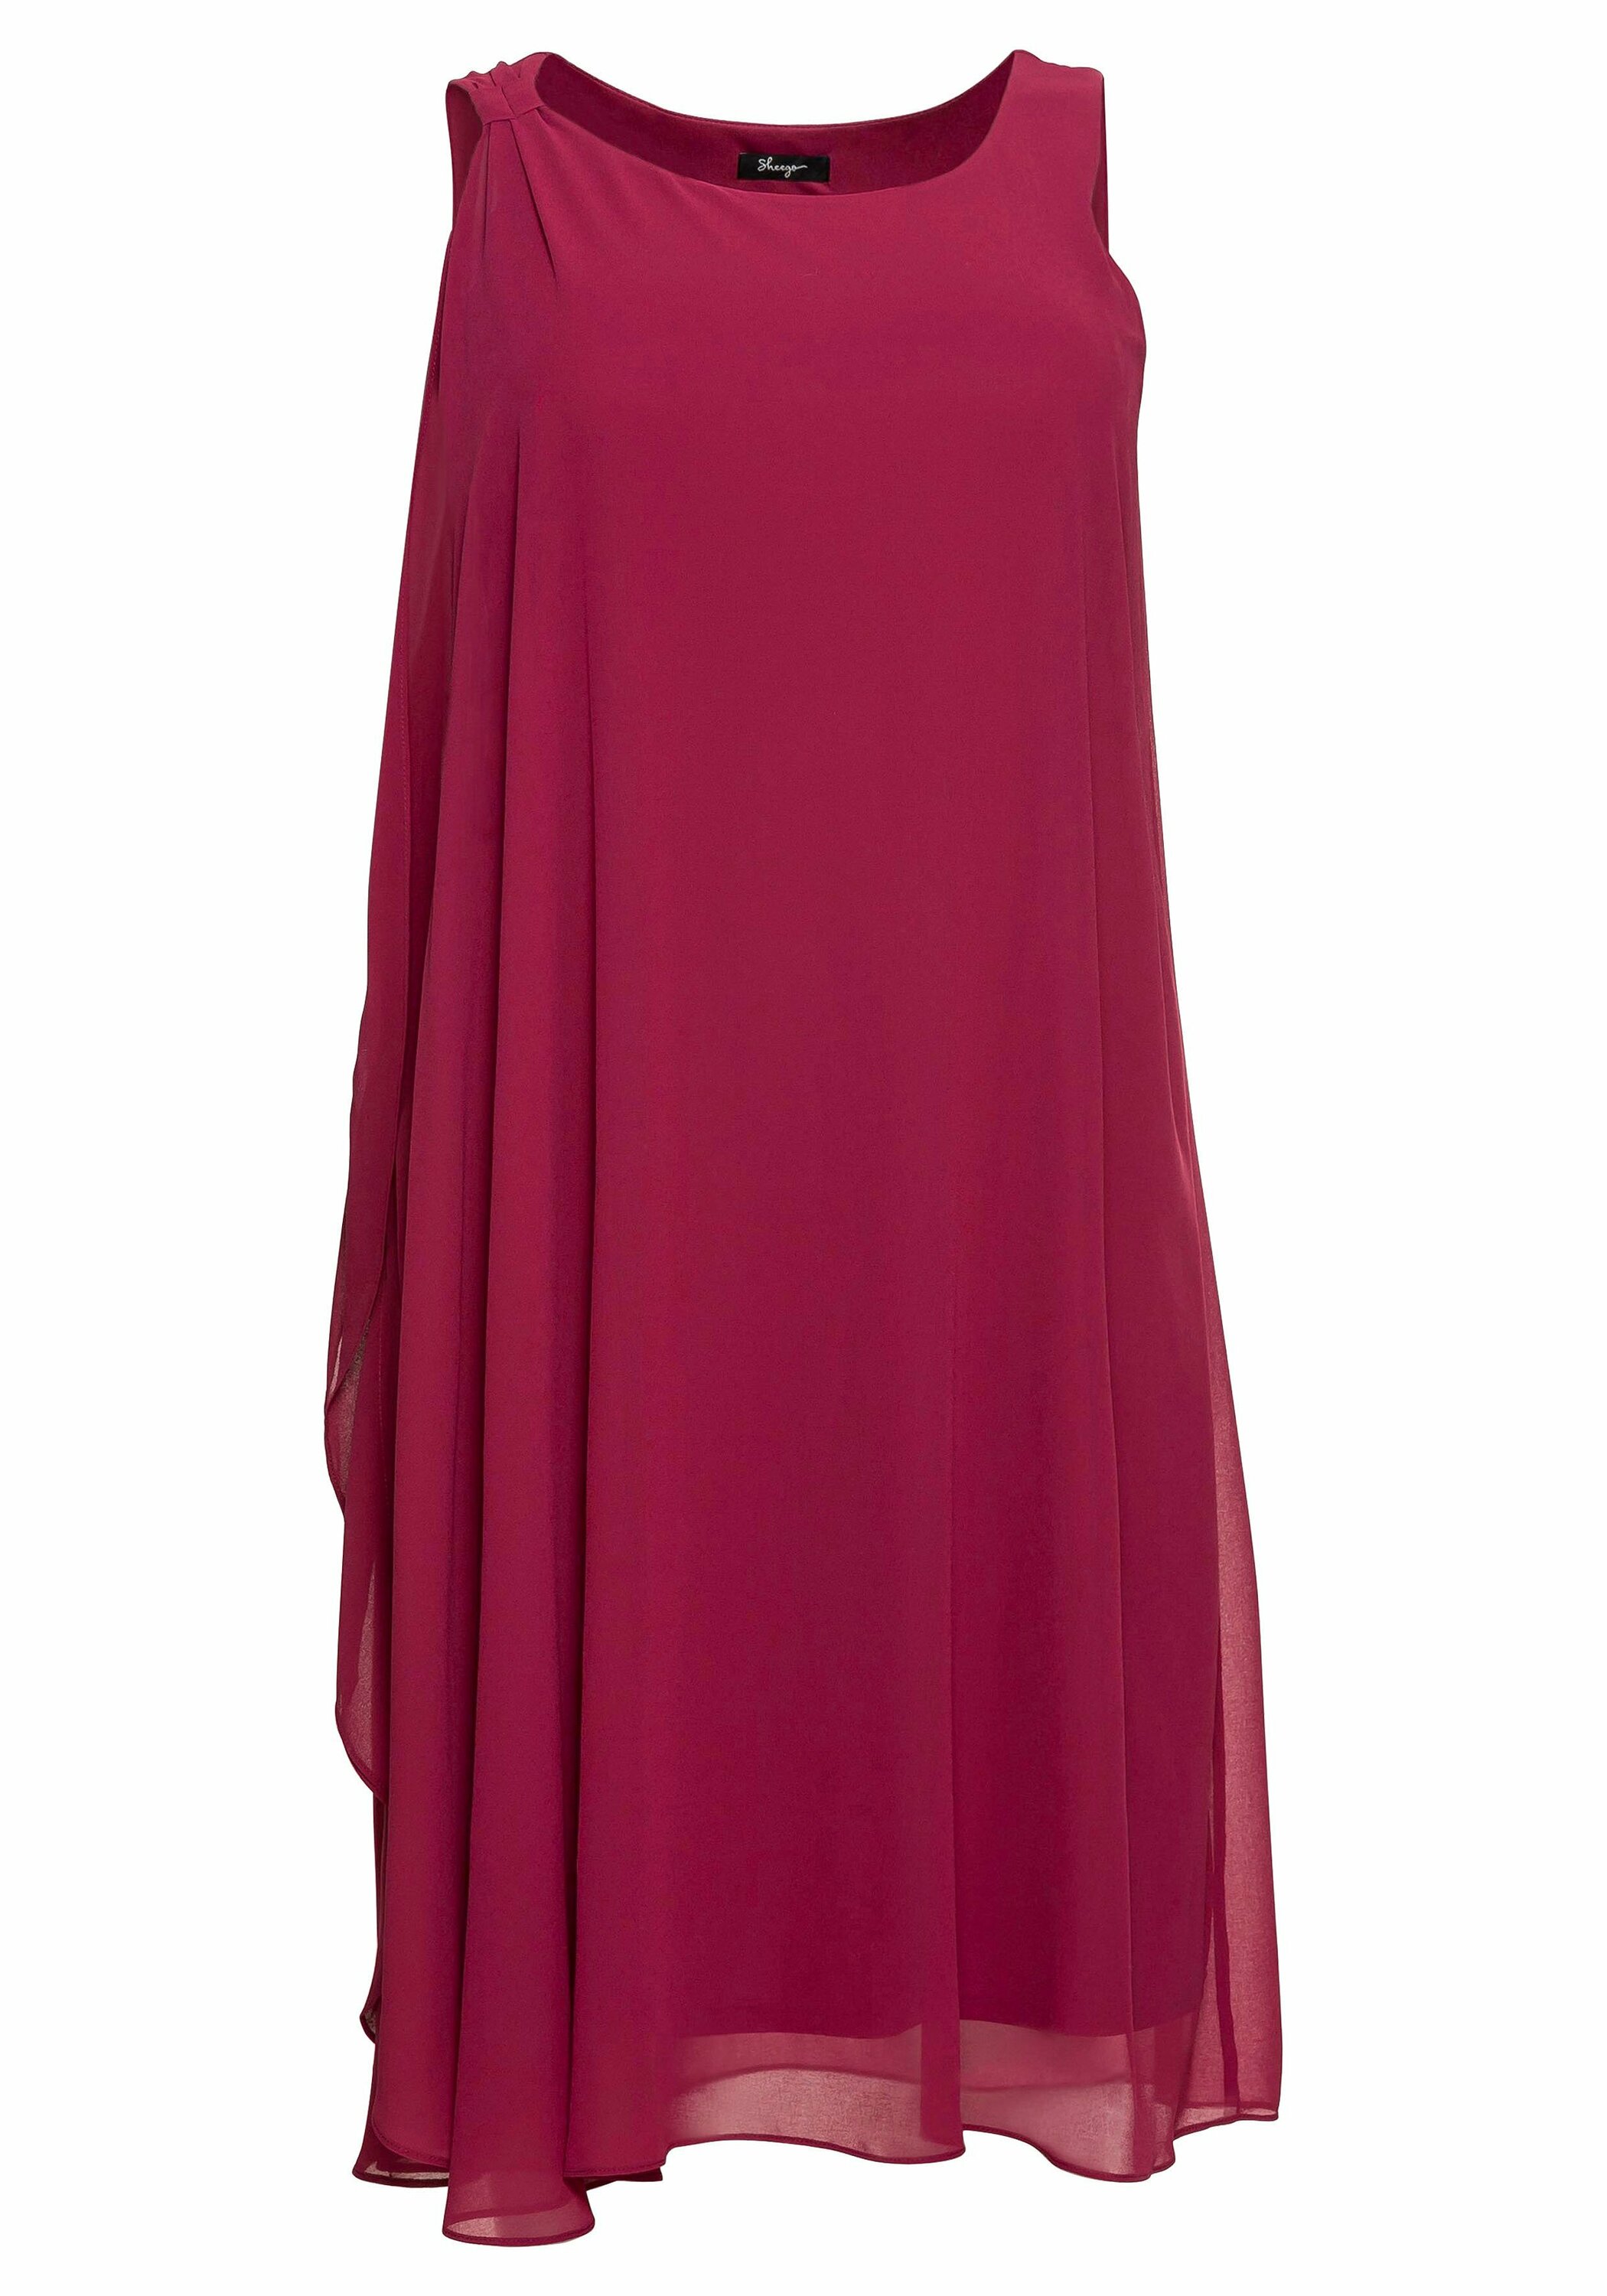 Odzież Kobiety SHEEGO Sukienka w kolorze Fioletowym 